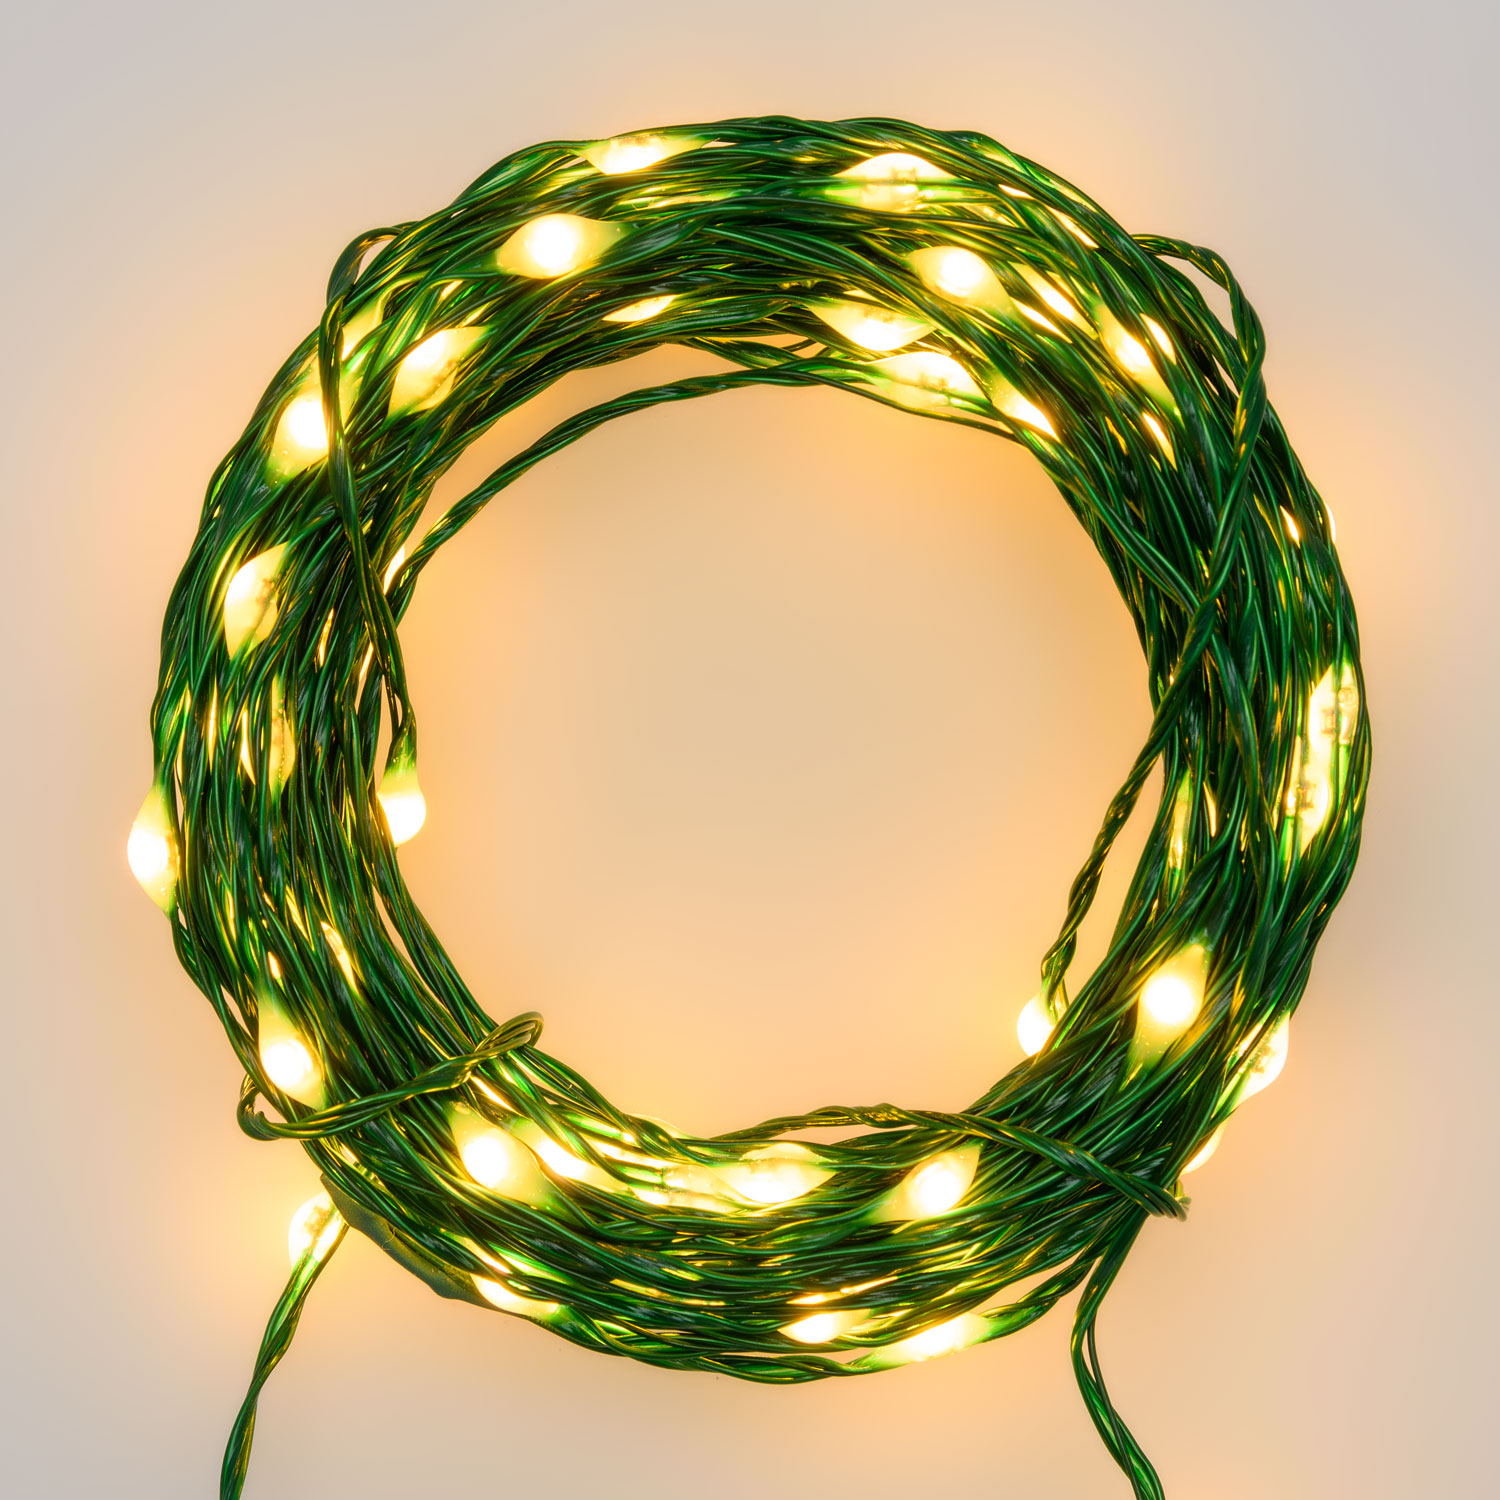 Электрогирлянда Lotti Профессионал 50 м 500 MicroLEDS зеленый кабель, цвет теплый белый - фото 2